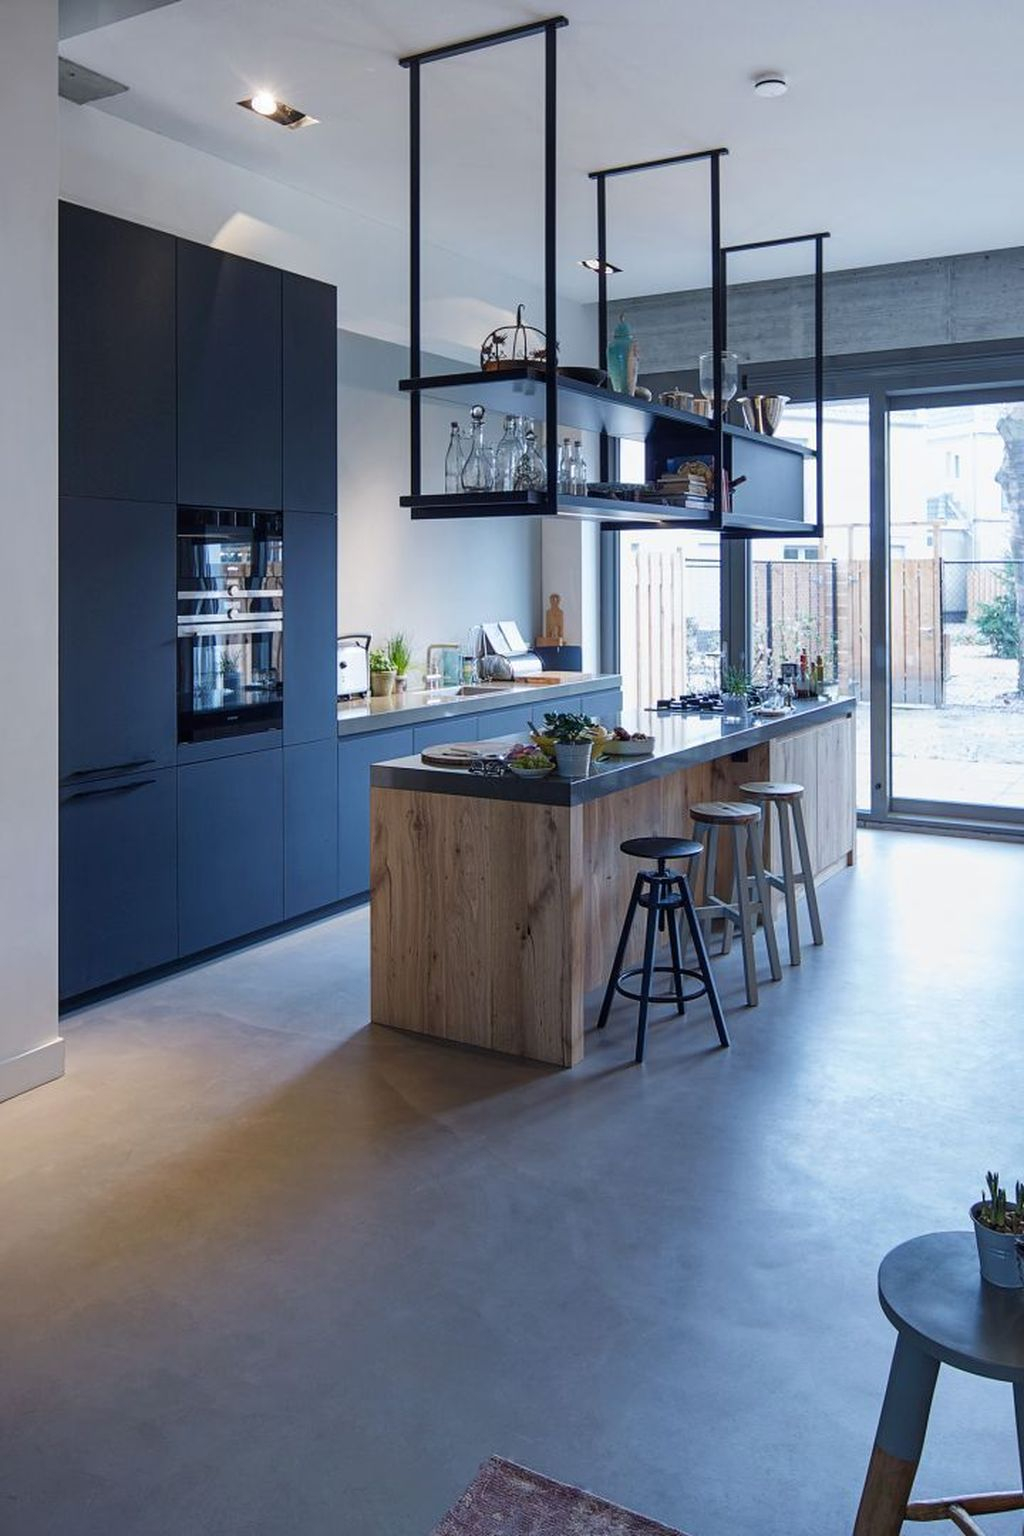 Wonderful Industrial Kitchen Shelf Design Ideas To Organize Your Kitchen39